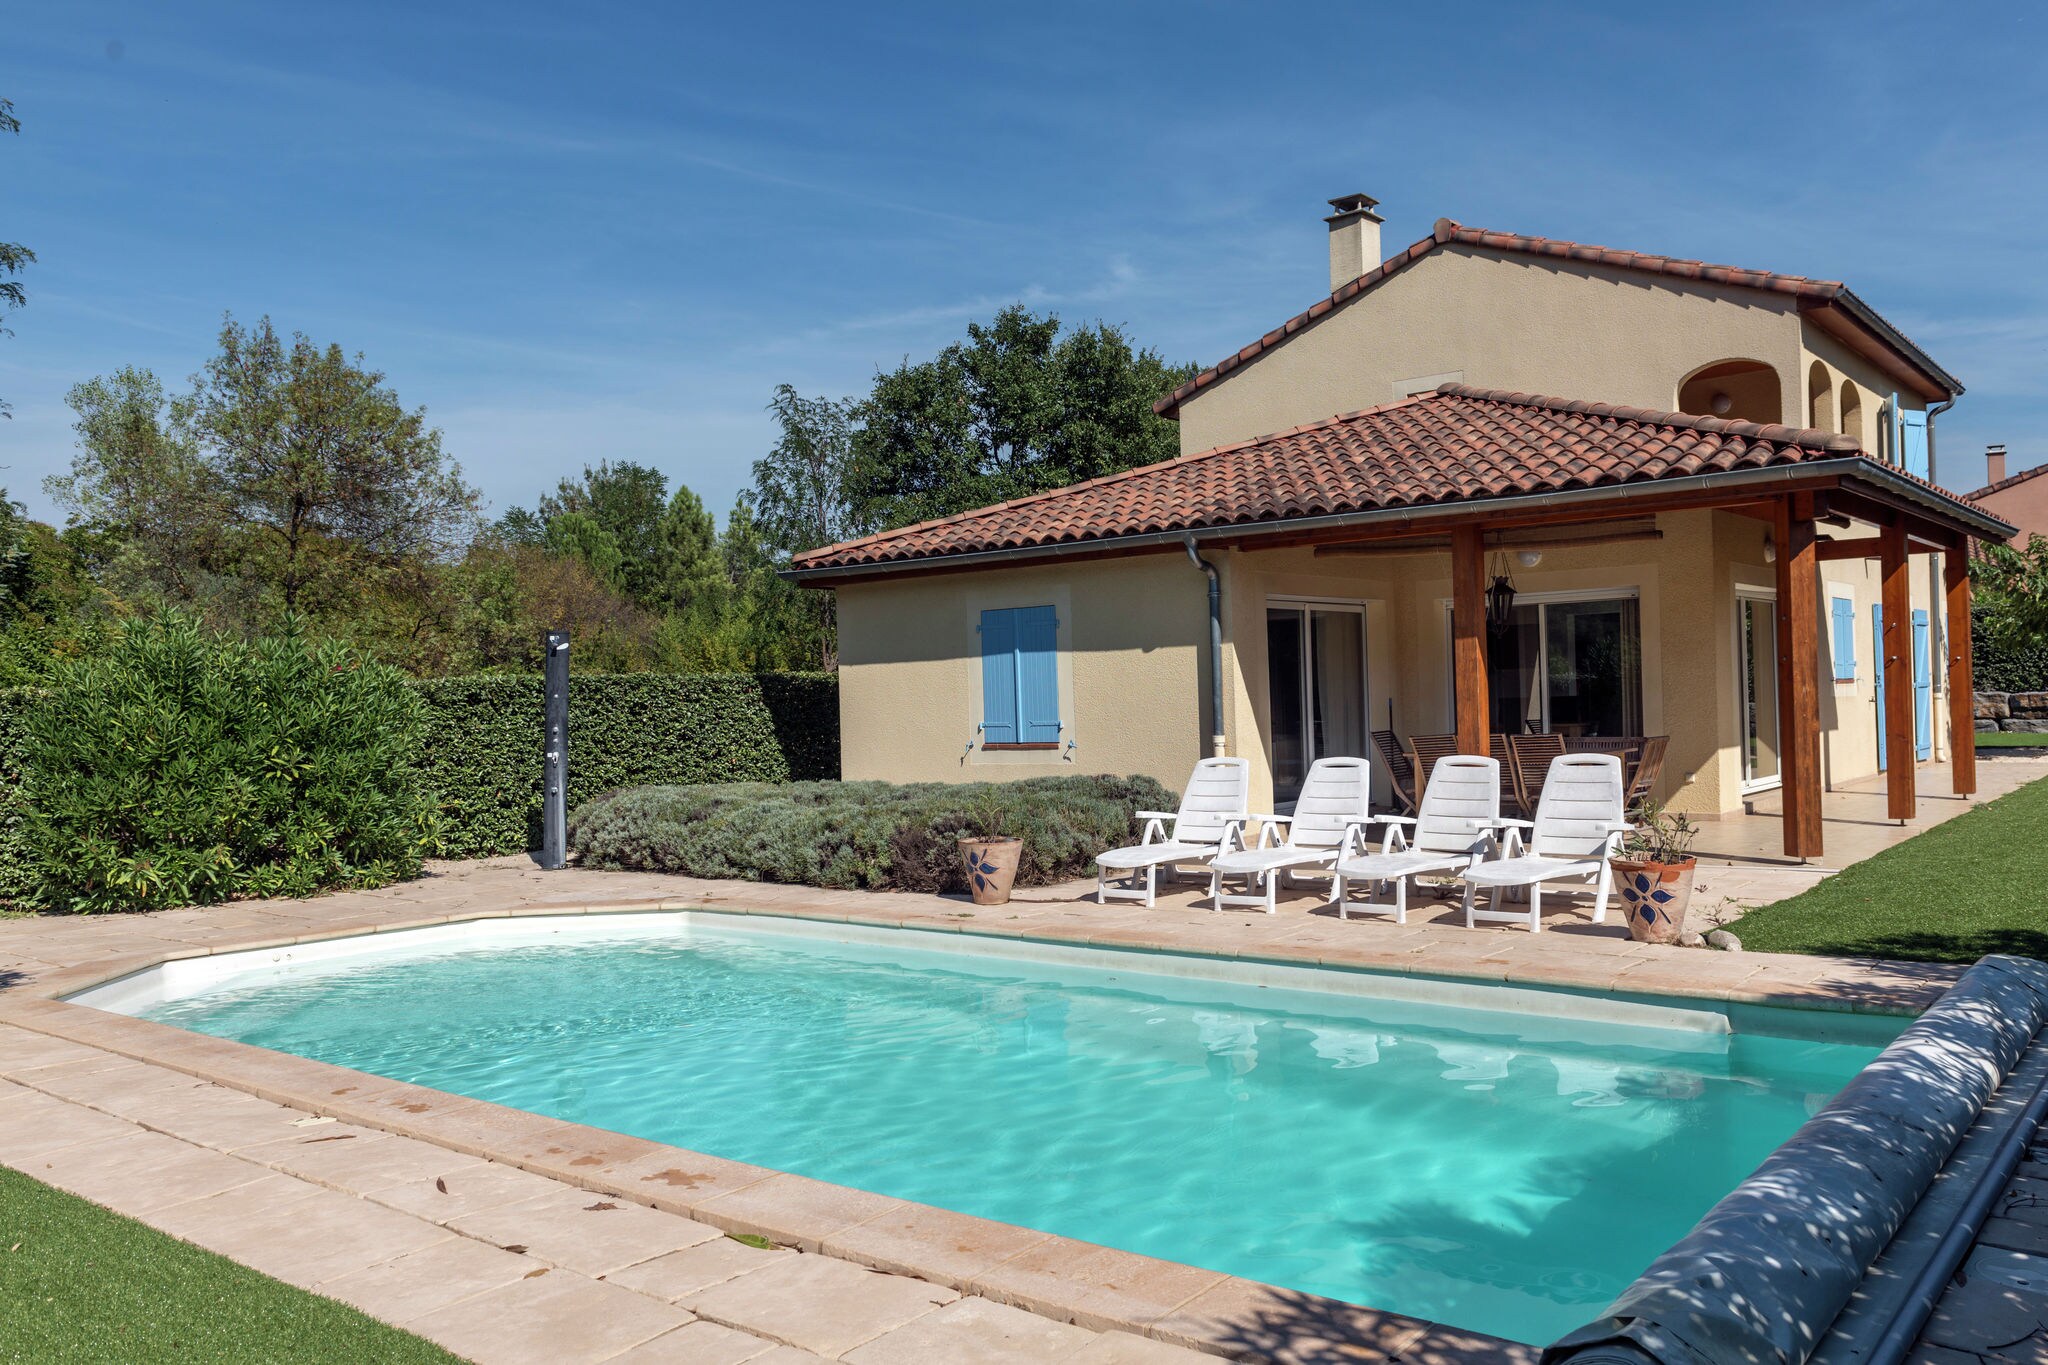 Charmante maison de vacances avec piscine située en Ardèche